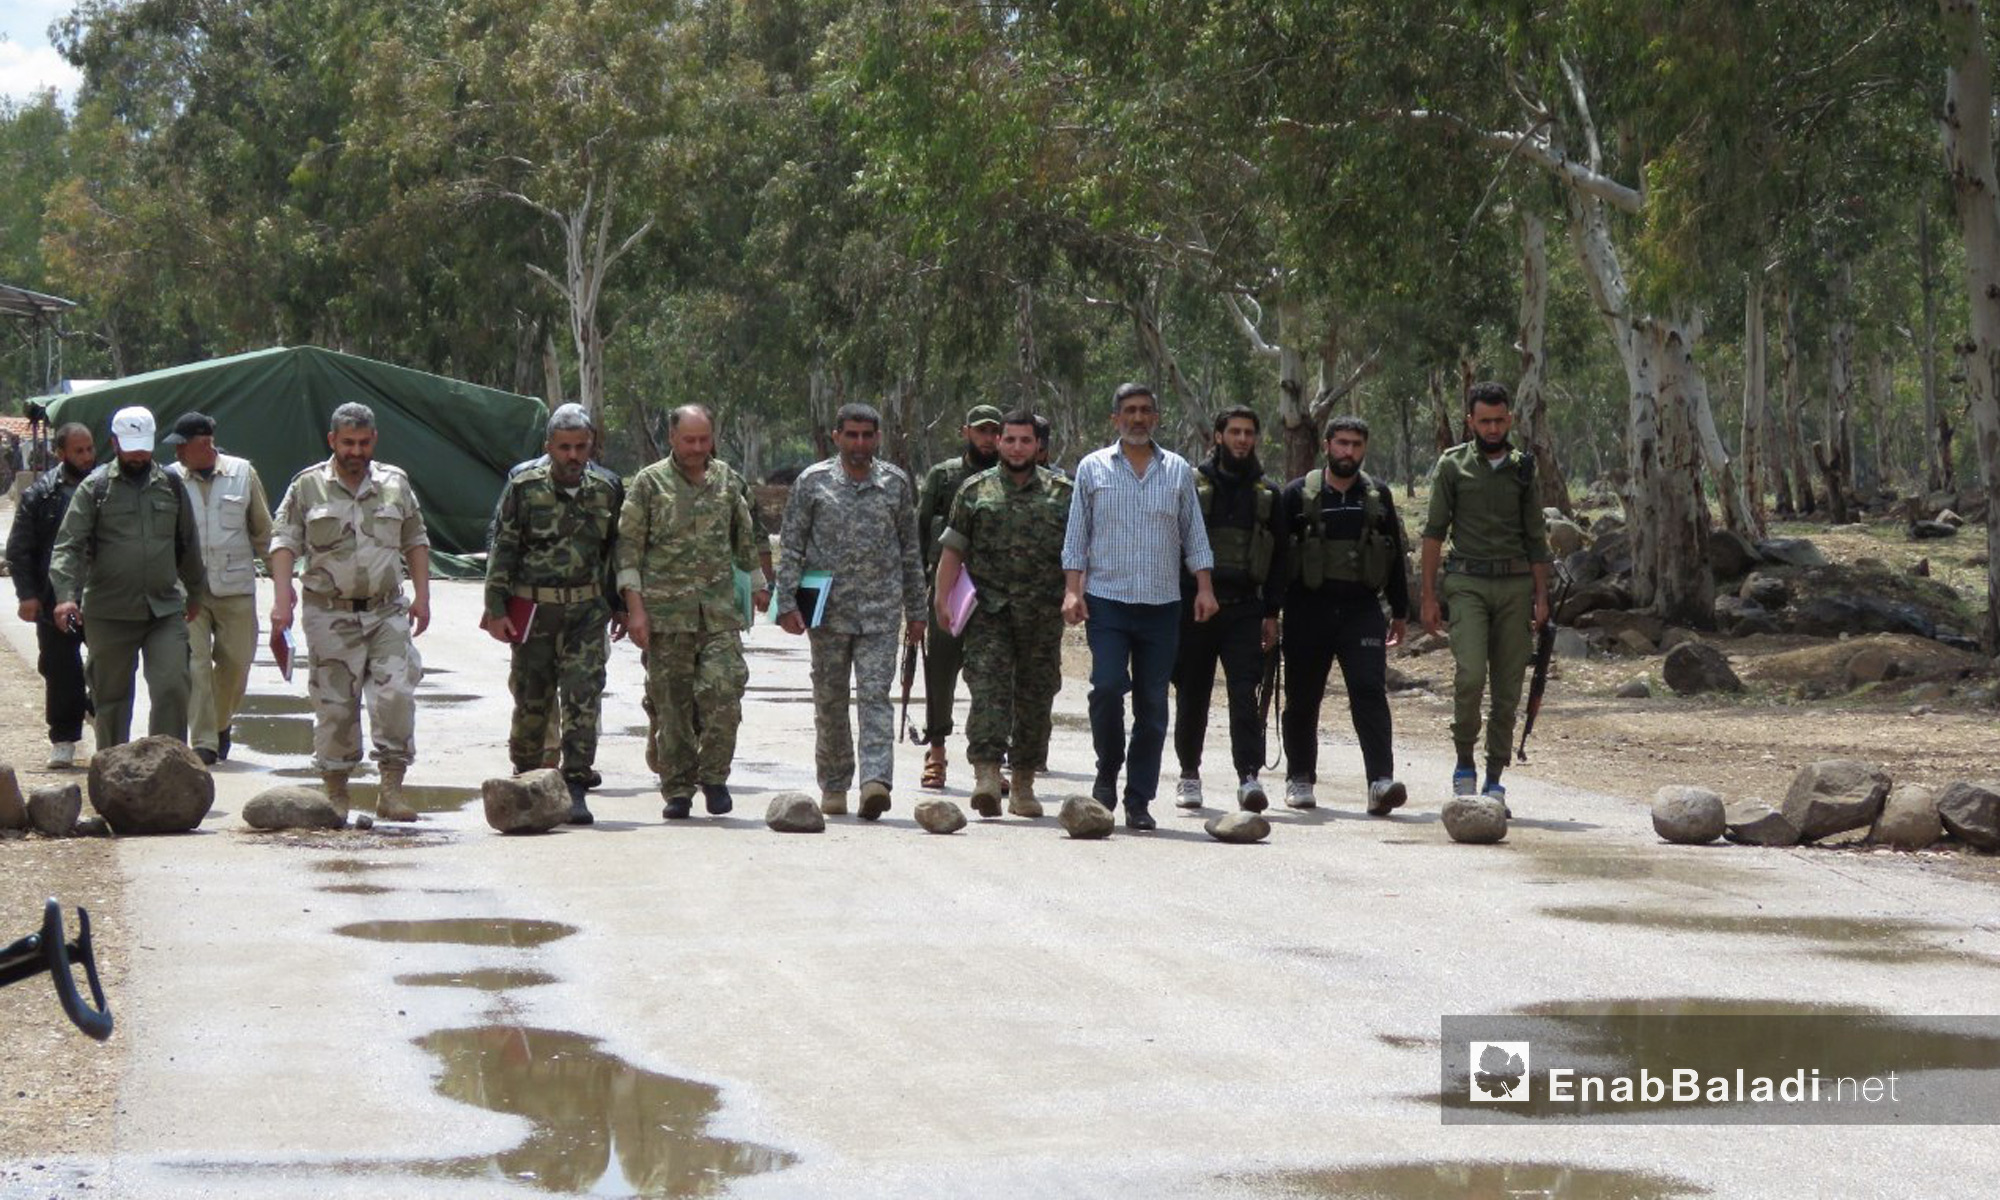 وفد "هيئة التفاوض" قرب معبر الدار الكبيرة شمالي حمص - 22 من نيسان 2018 (عنب بلدي)